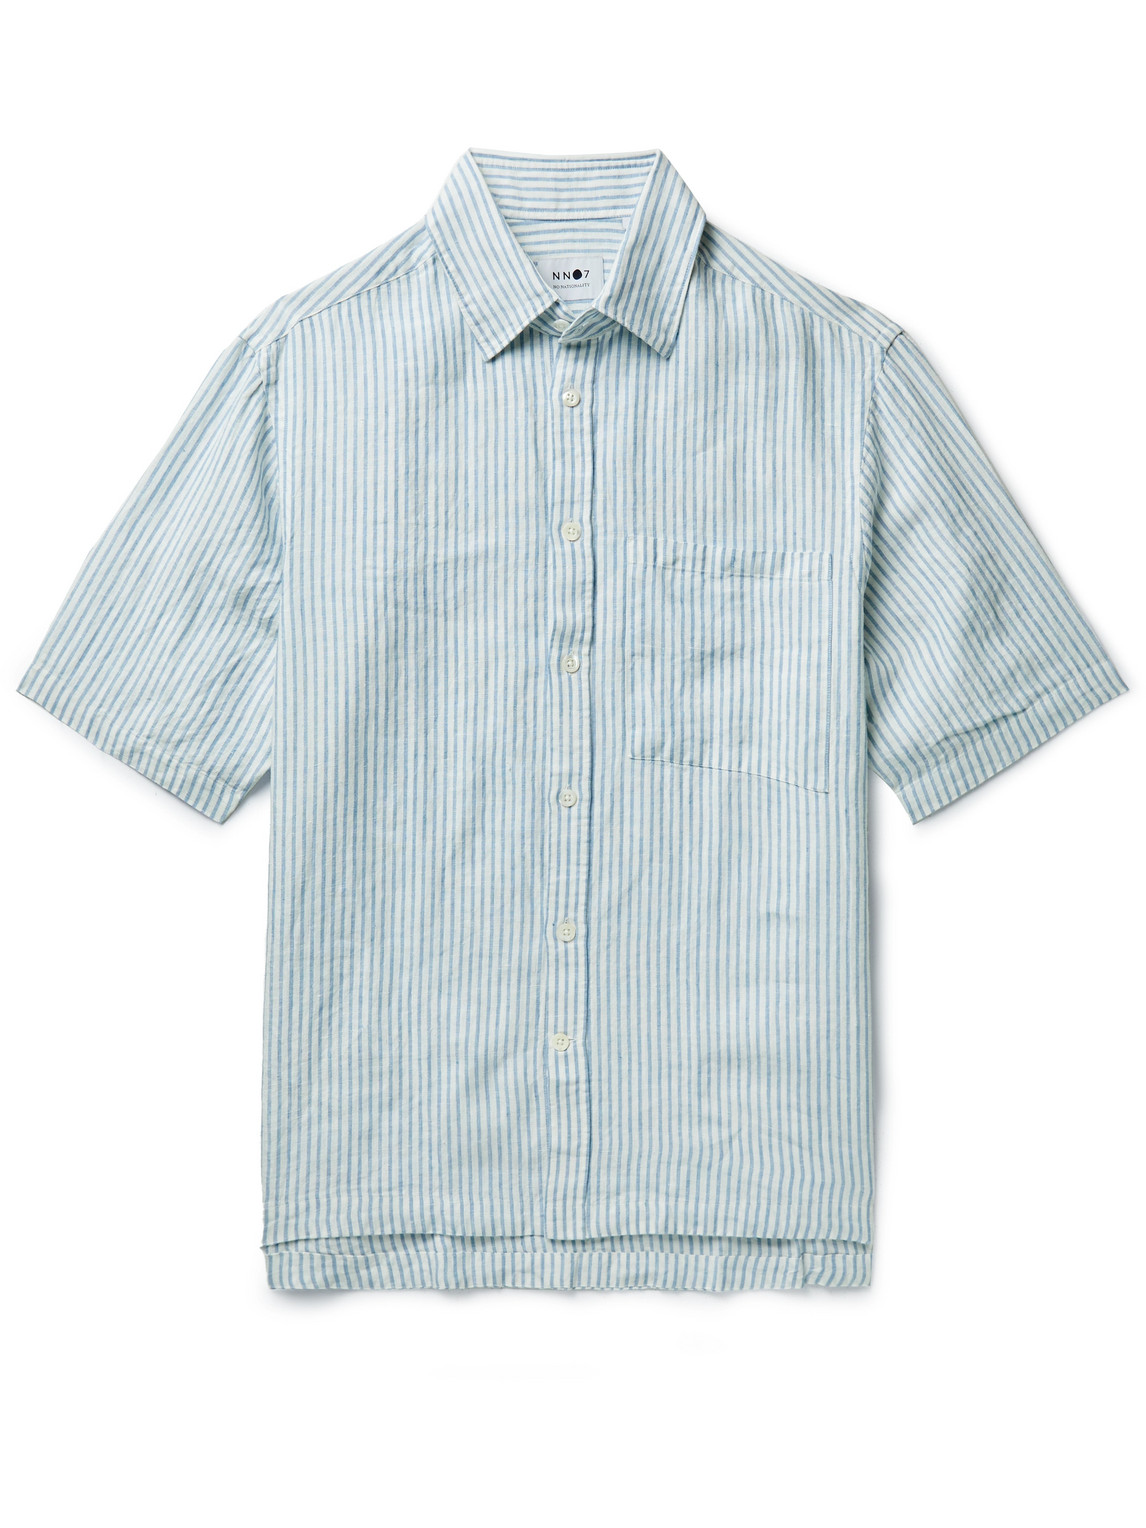 NN07 Striped Linen Shirt